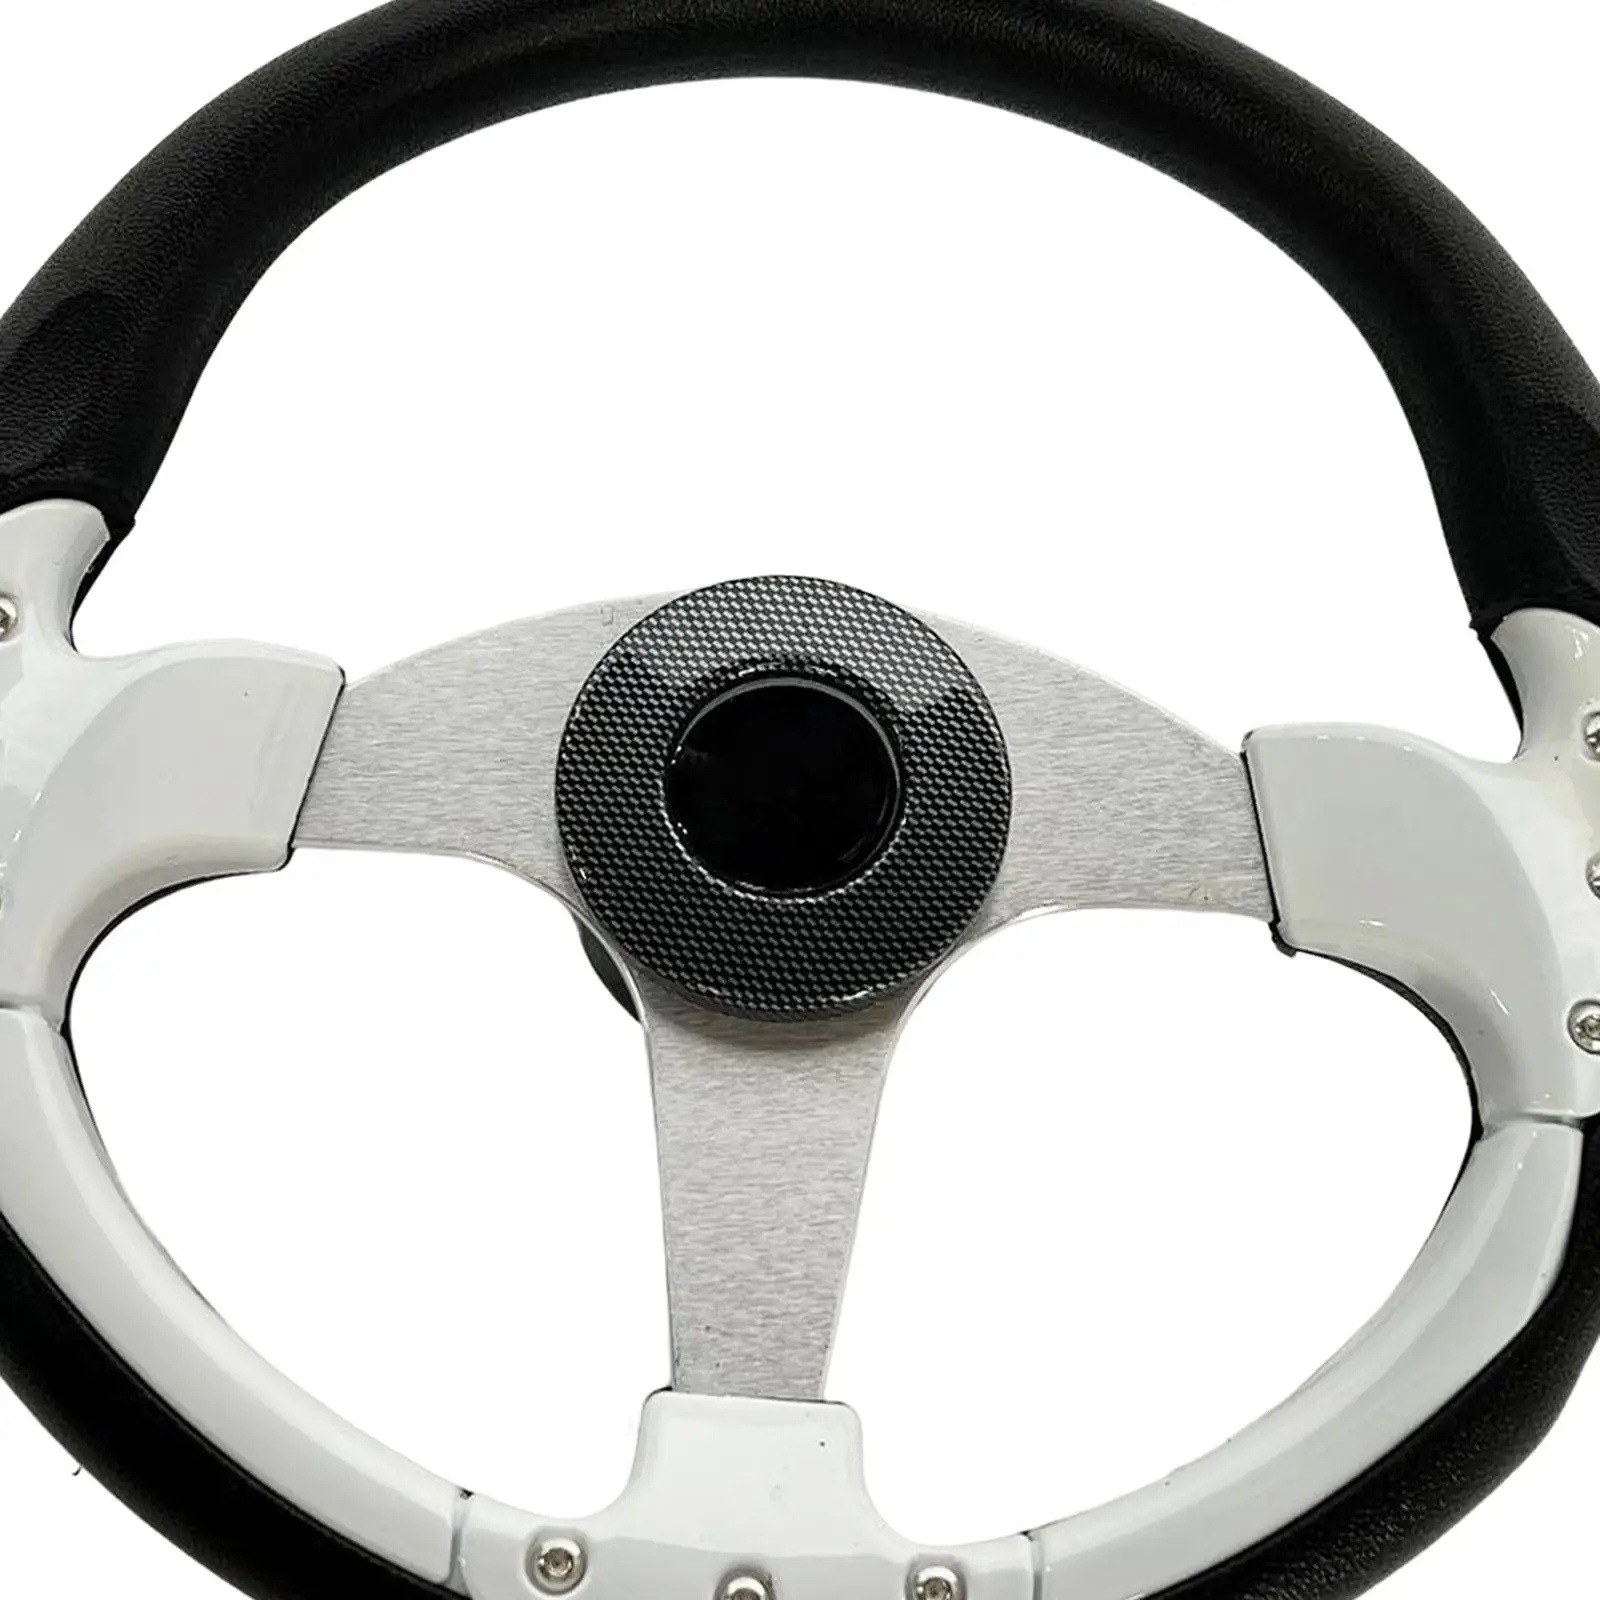 350mm Boat Steering Wheel Ergonomic Design Aluminum Frame for Vessels